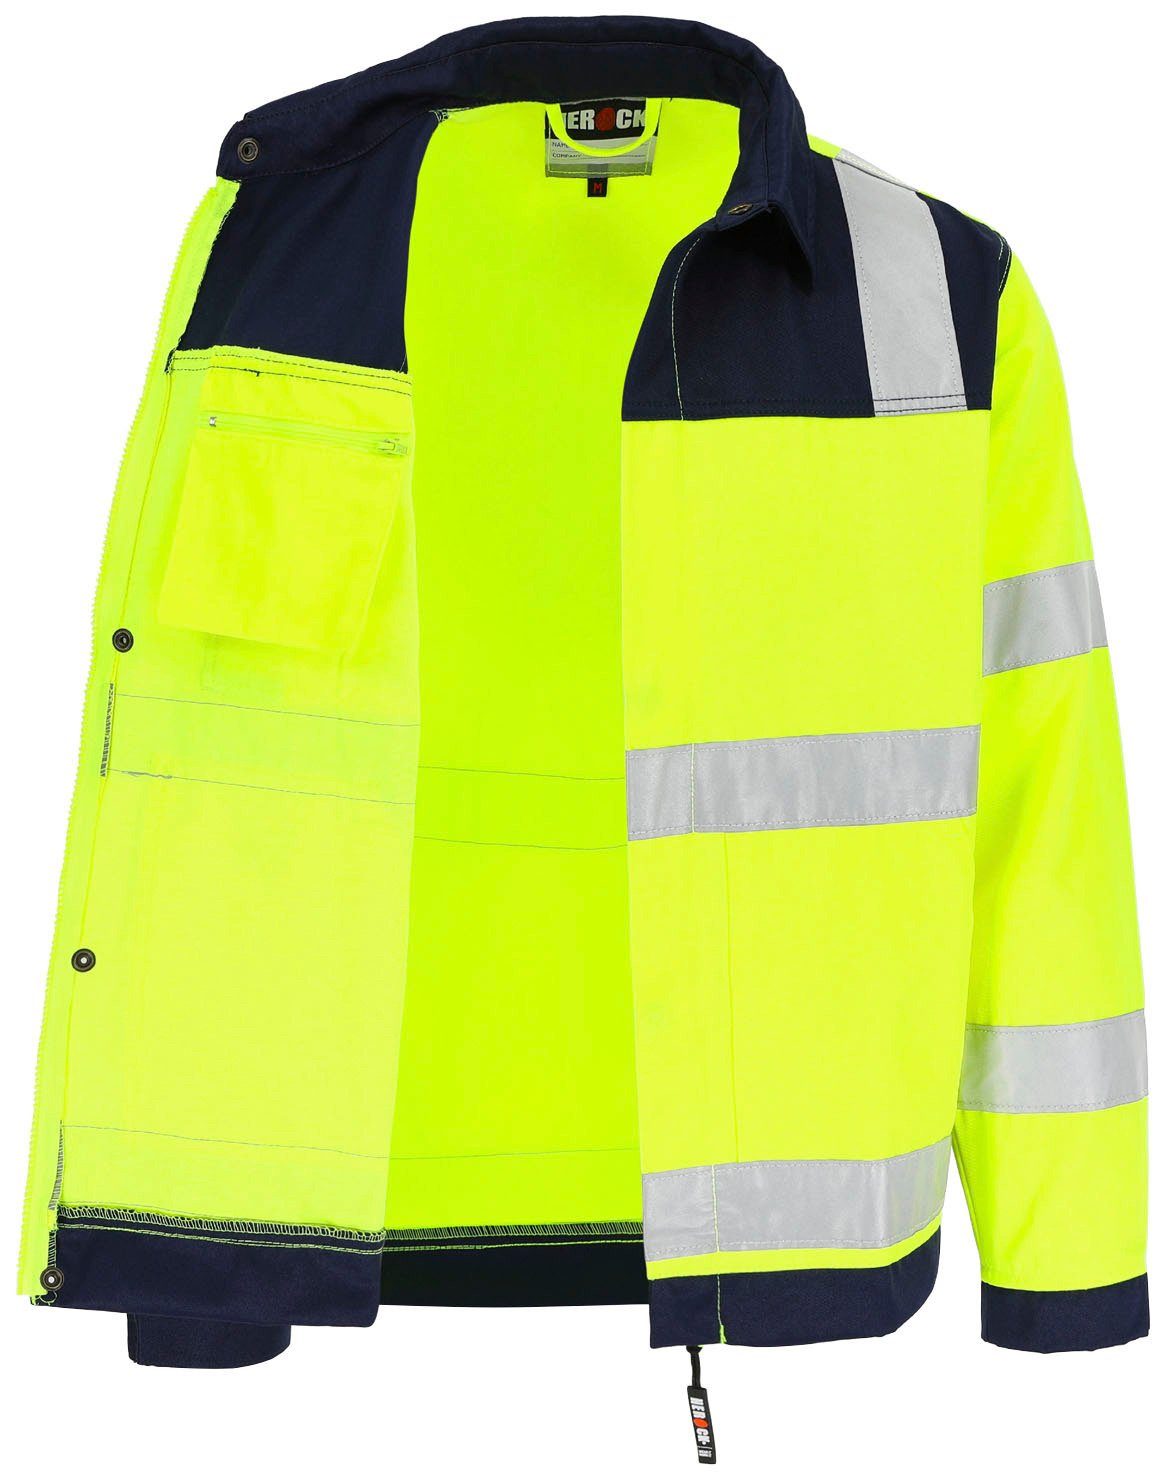 Bündchen, eintellbare Hochsichtbar Jacke 5 reflektierende Herock Taschen, Hochwertig, gelb Bänder Arbeitsjacke 5cm Hydros